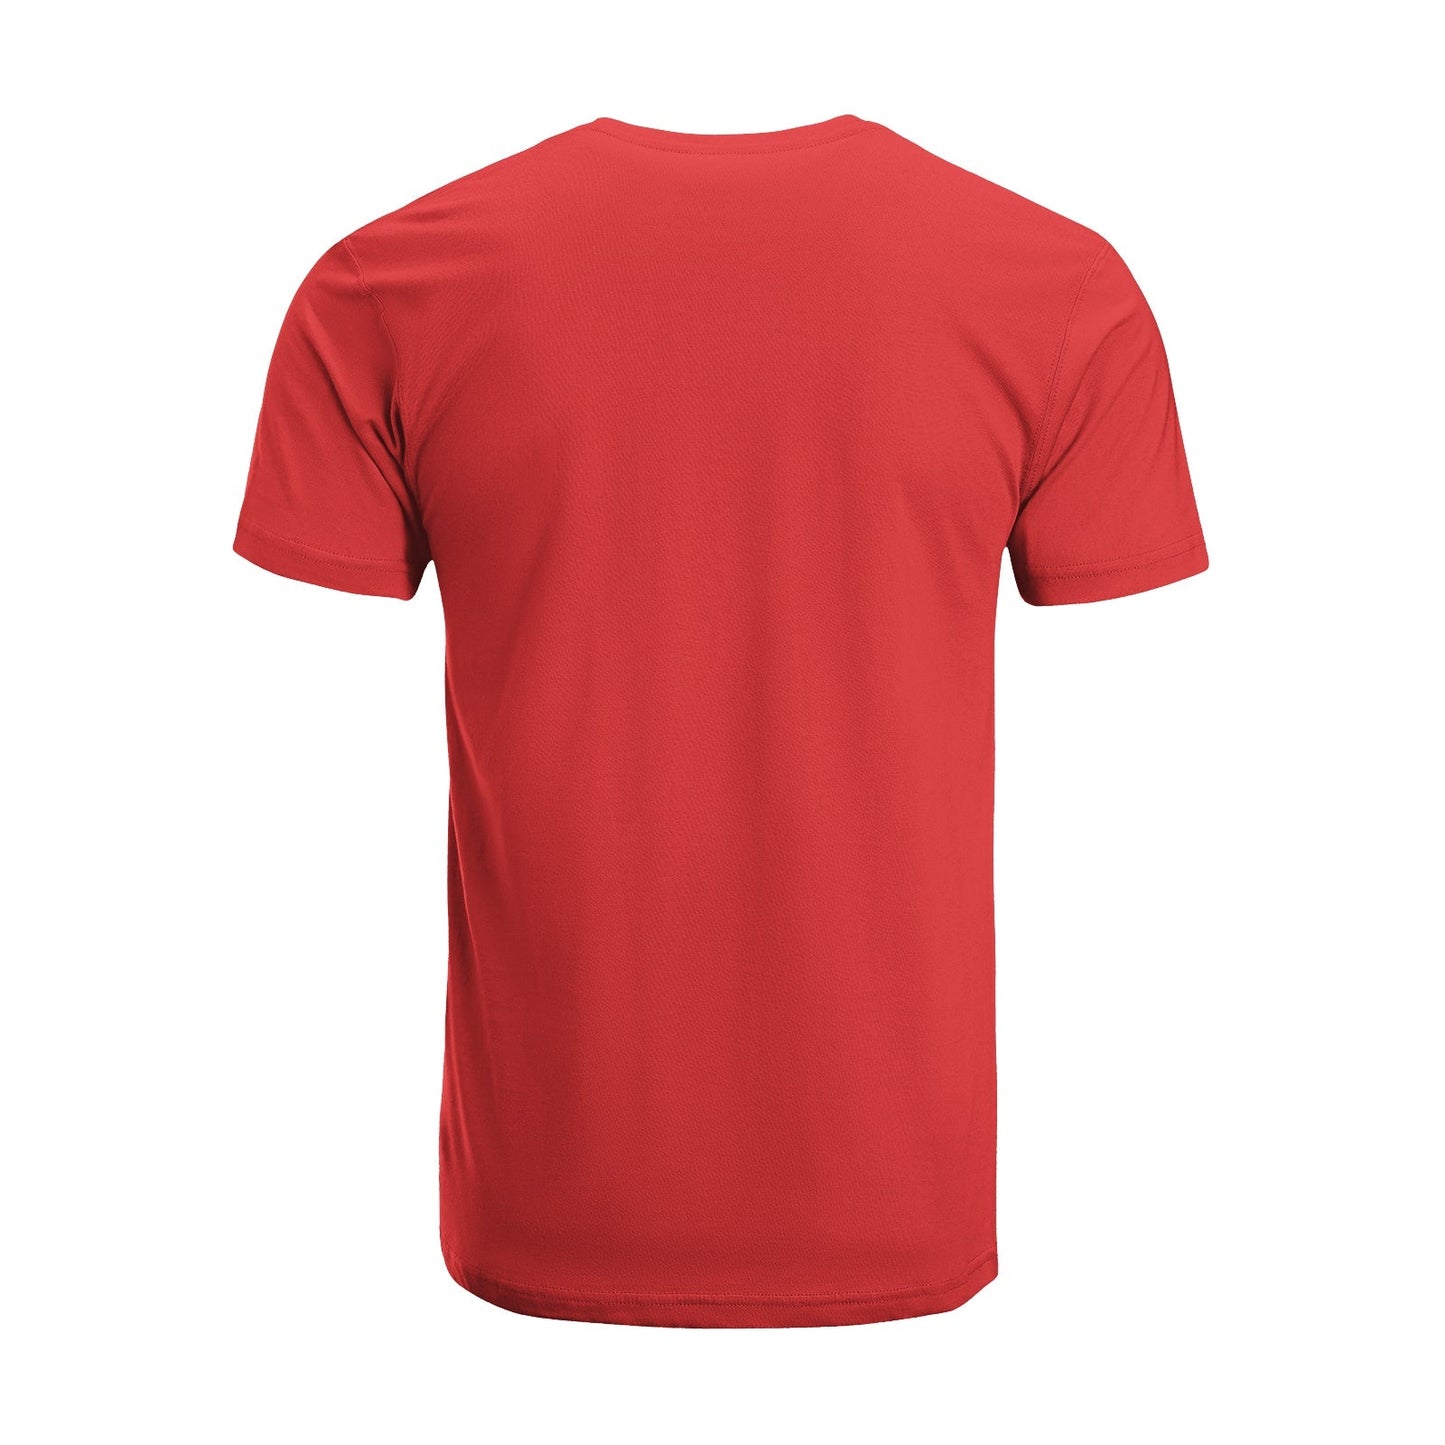 Unisex Short Sleeve Crew Neck Cotton Jersey T-Shirt TRUCK 49